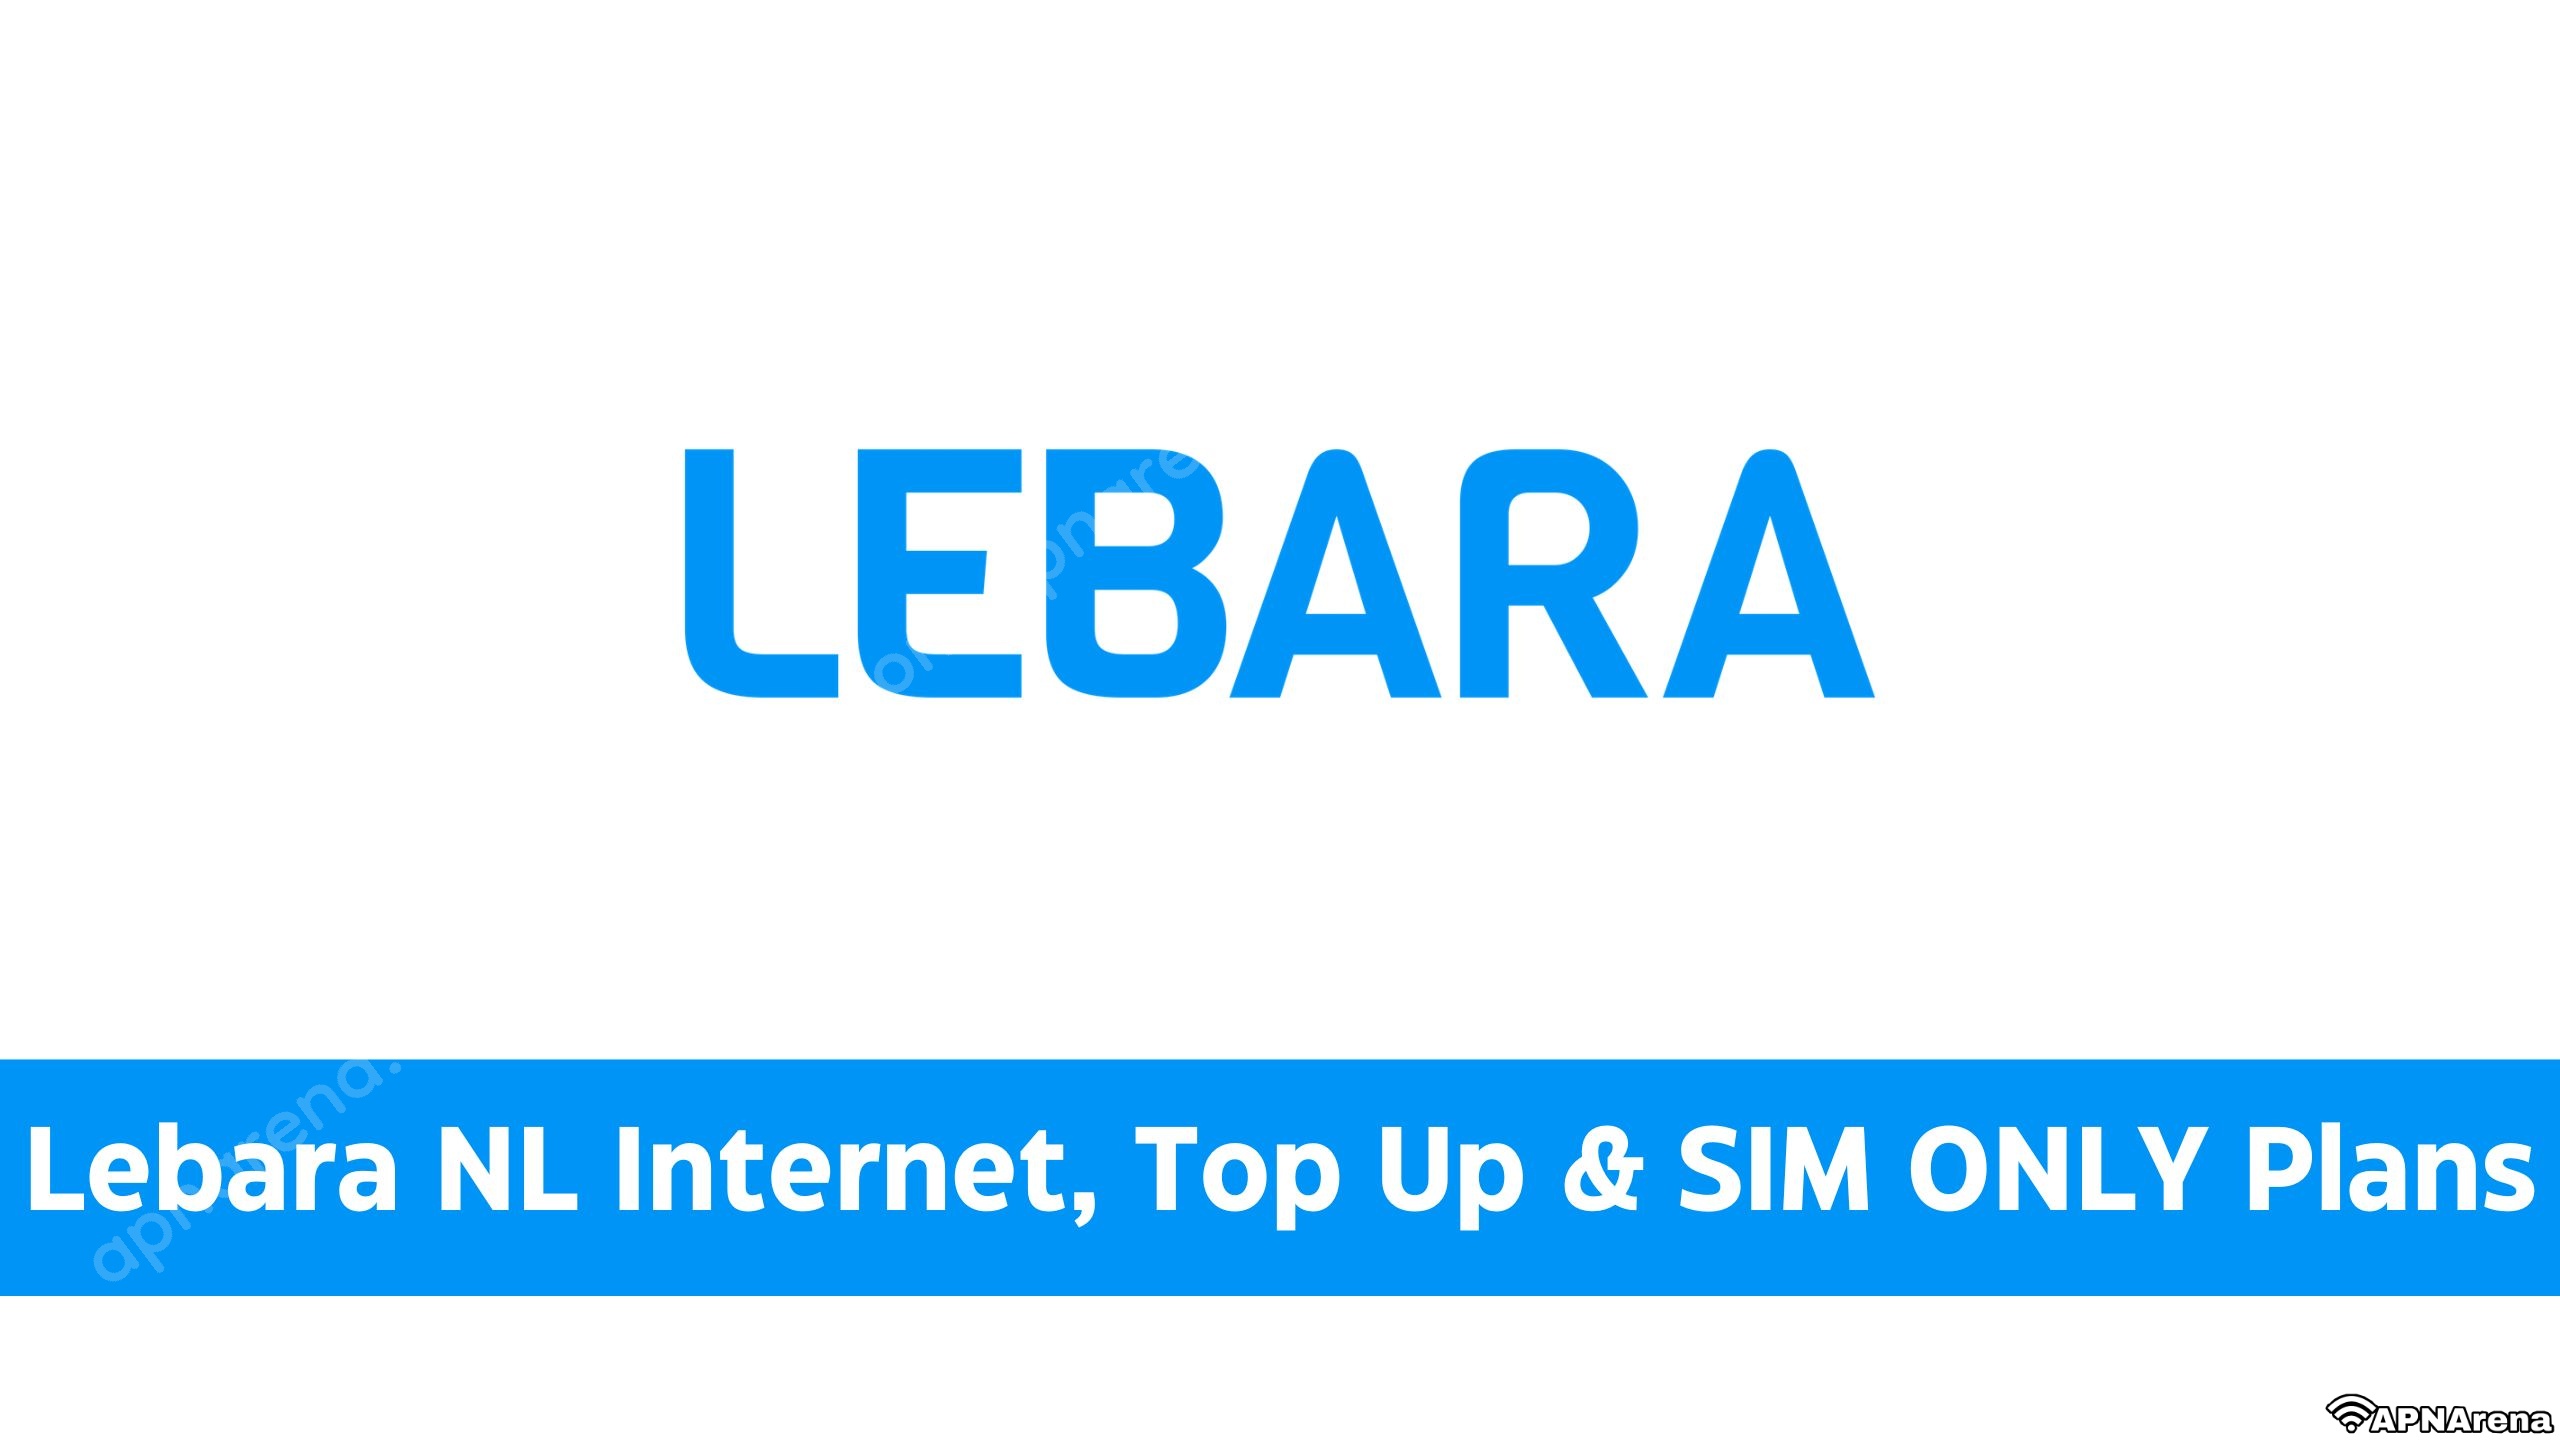 Lebara NL Opwaarderen, SIM ONLY Up Top & & Bundles Data Beltegoed, Internet, Plans Other 